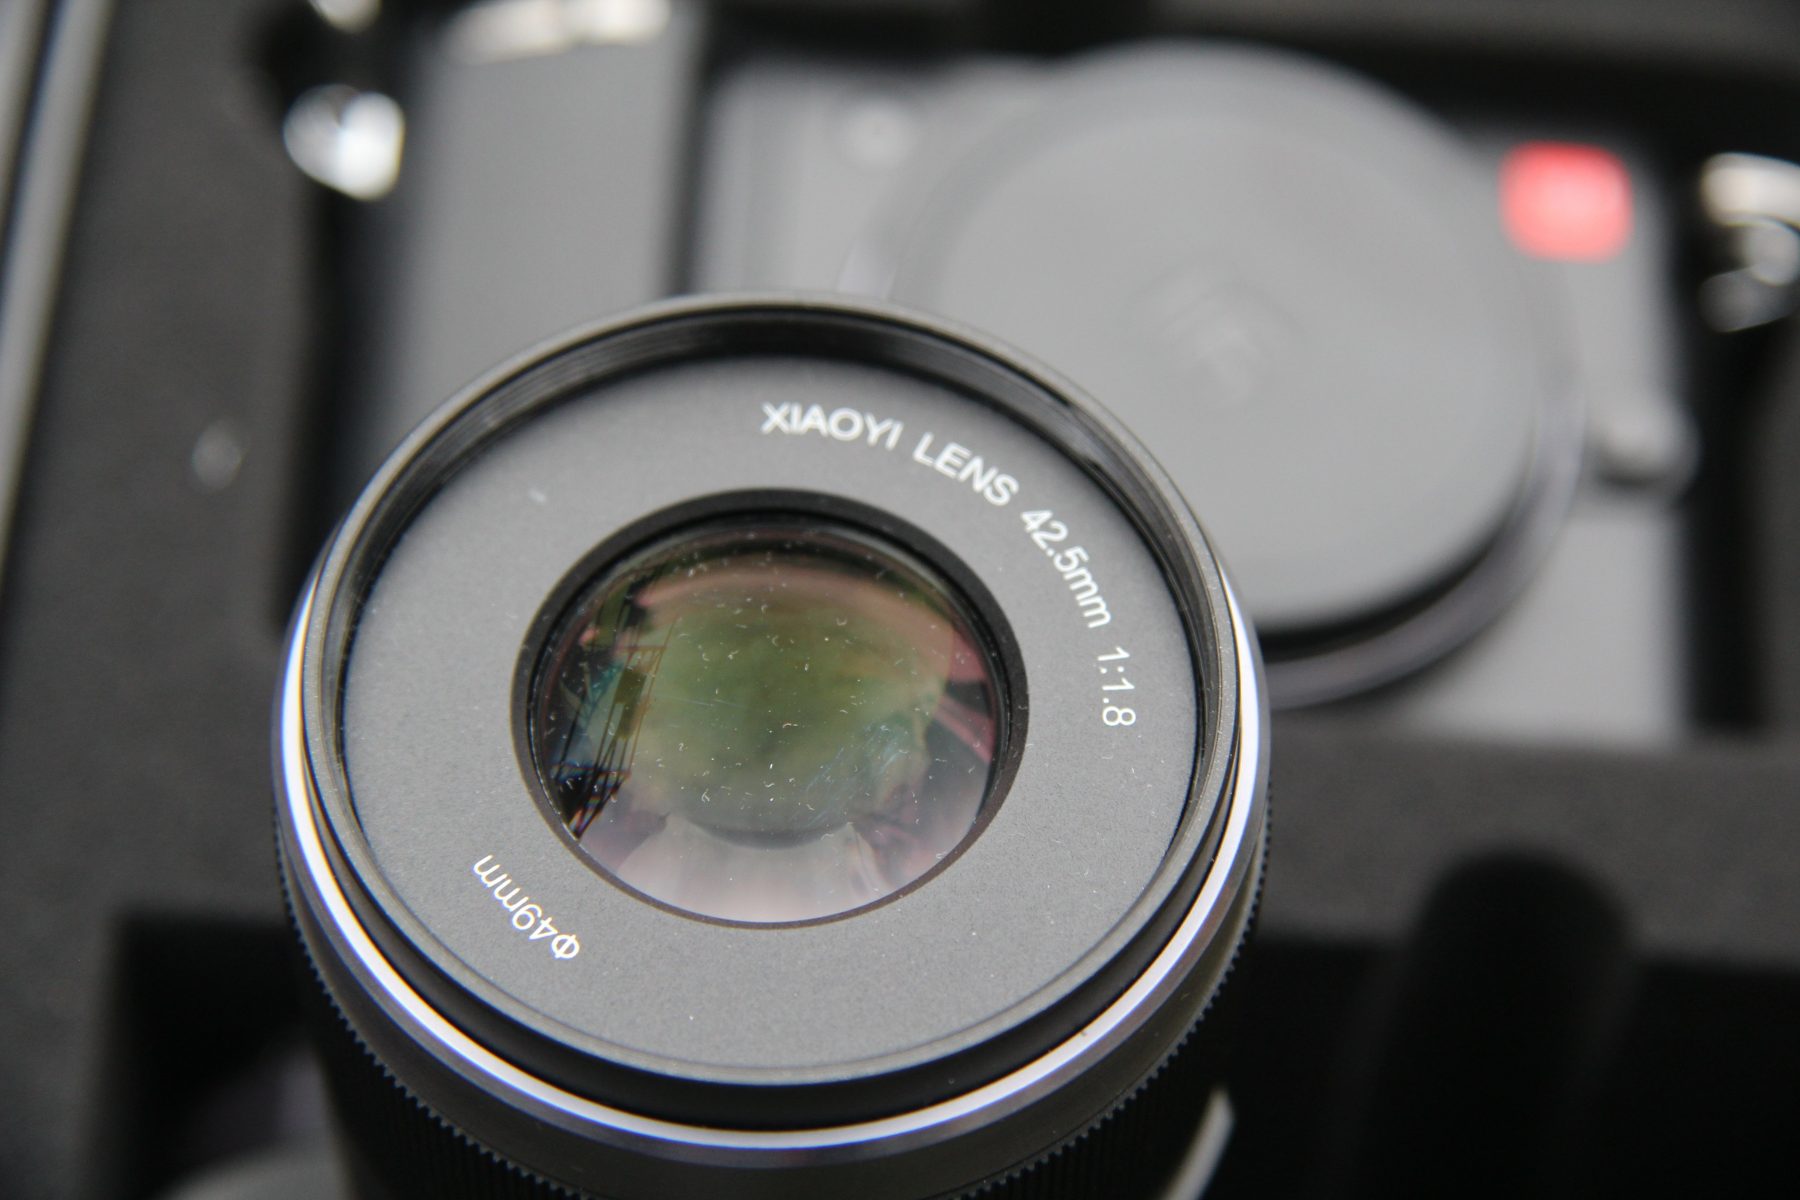 YI M1 Mirrorless XIAOYI Lens